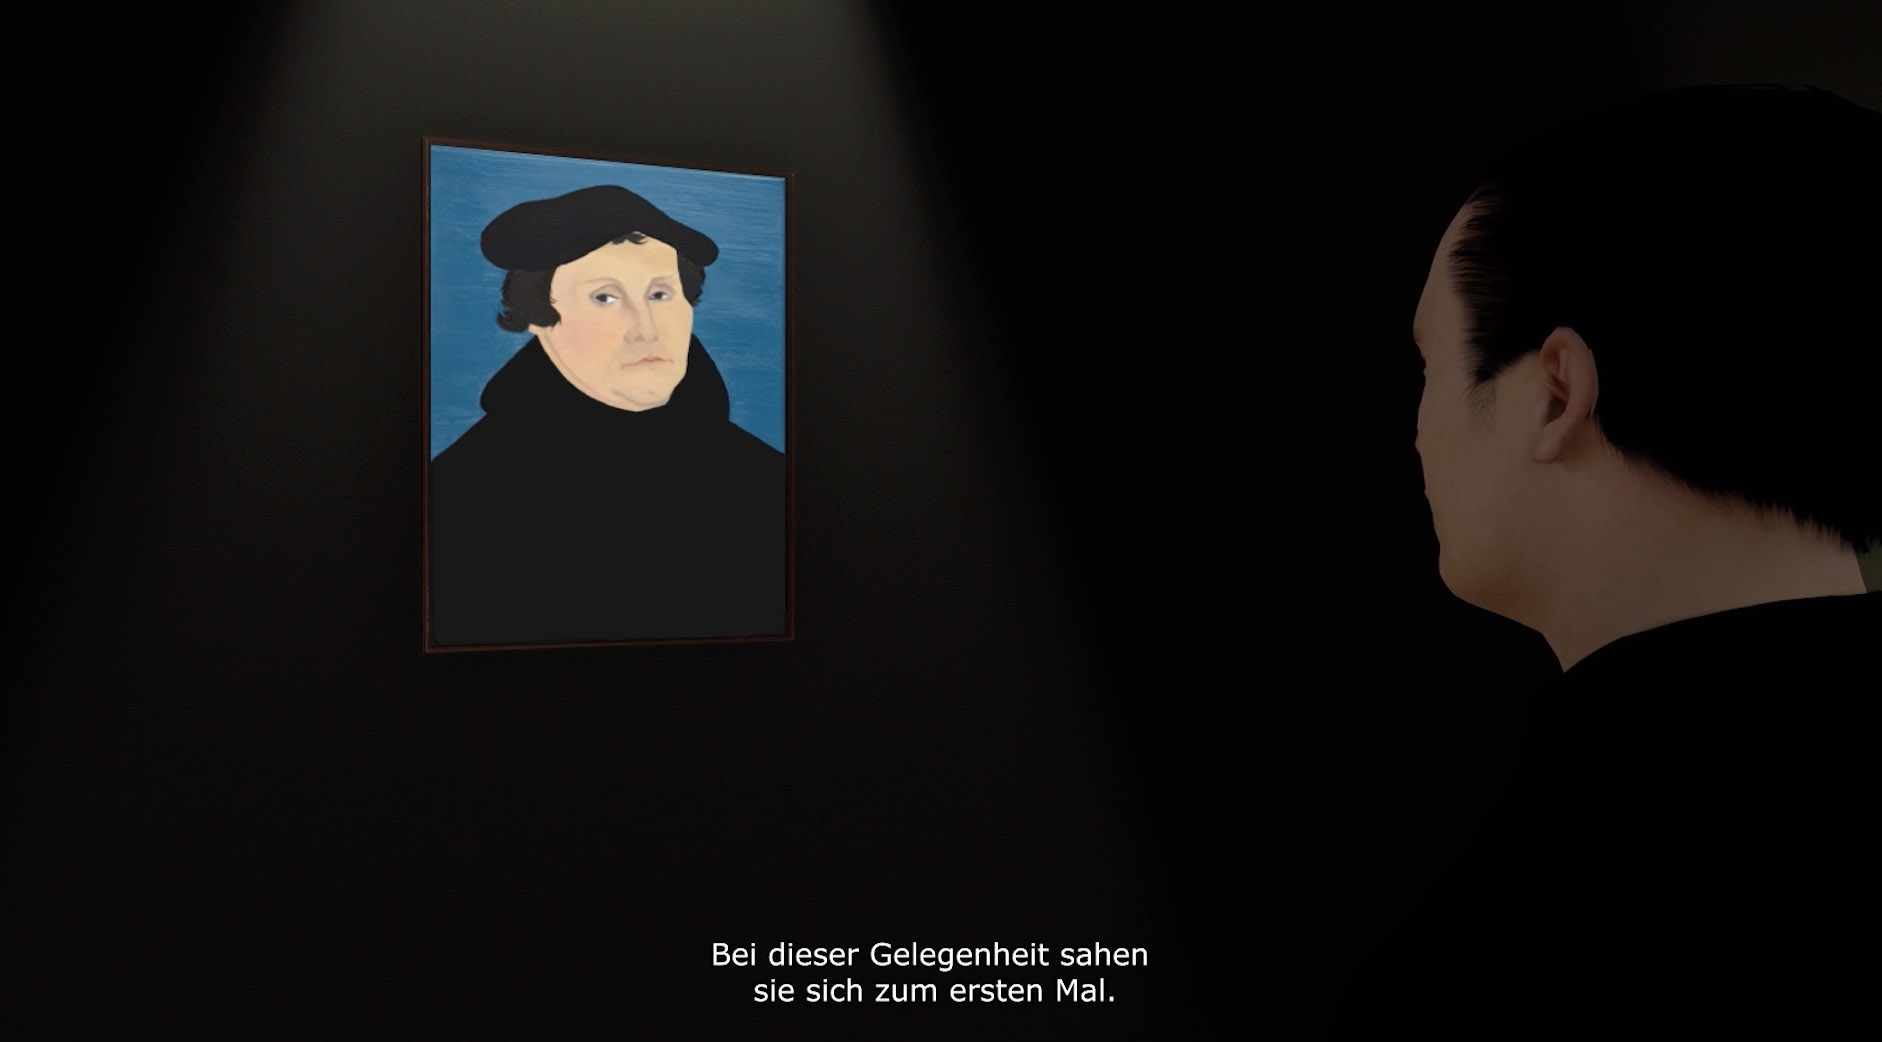 Gutenberg trifft auf sein Portrait an der Wand. Das Bild ist eine Animation. Darunter steht: "Bei dieser Gelengenheit sahen sie sich zum ersten Mal."